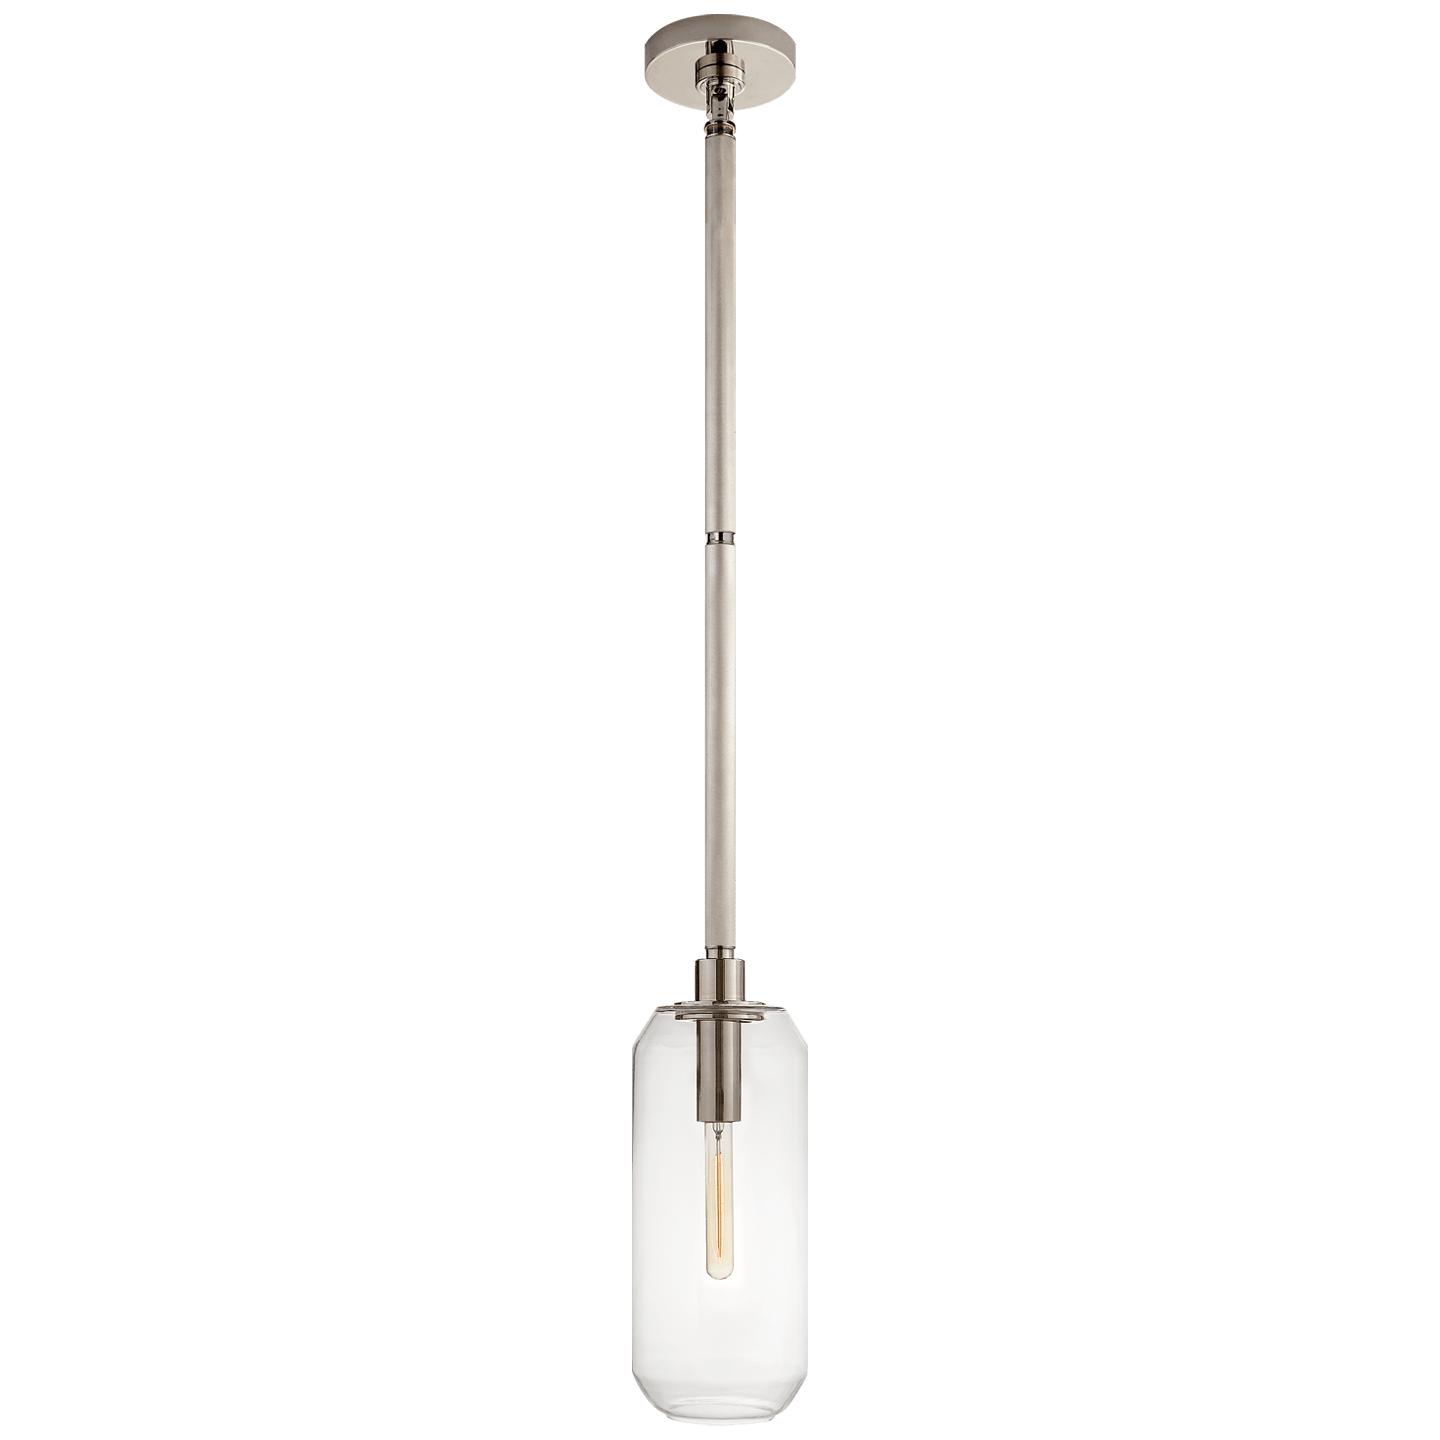 Купить Подвесной светильник Barrett Small Knurled Pendant в интернет-магазине roooms.ru